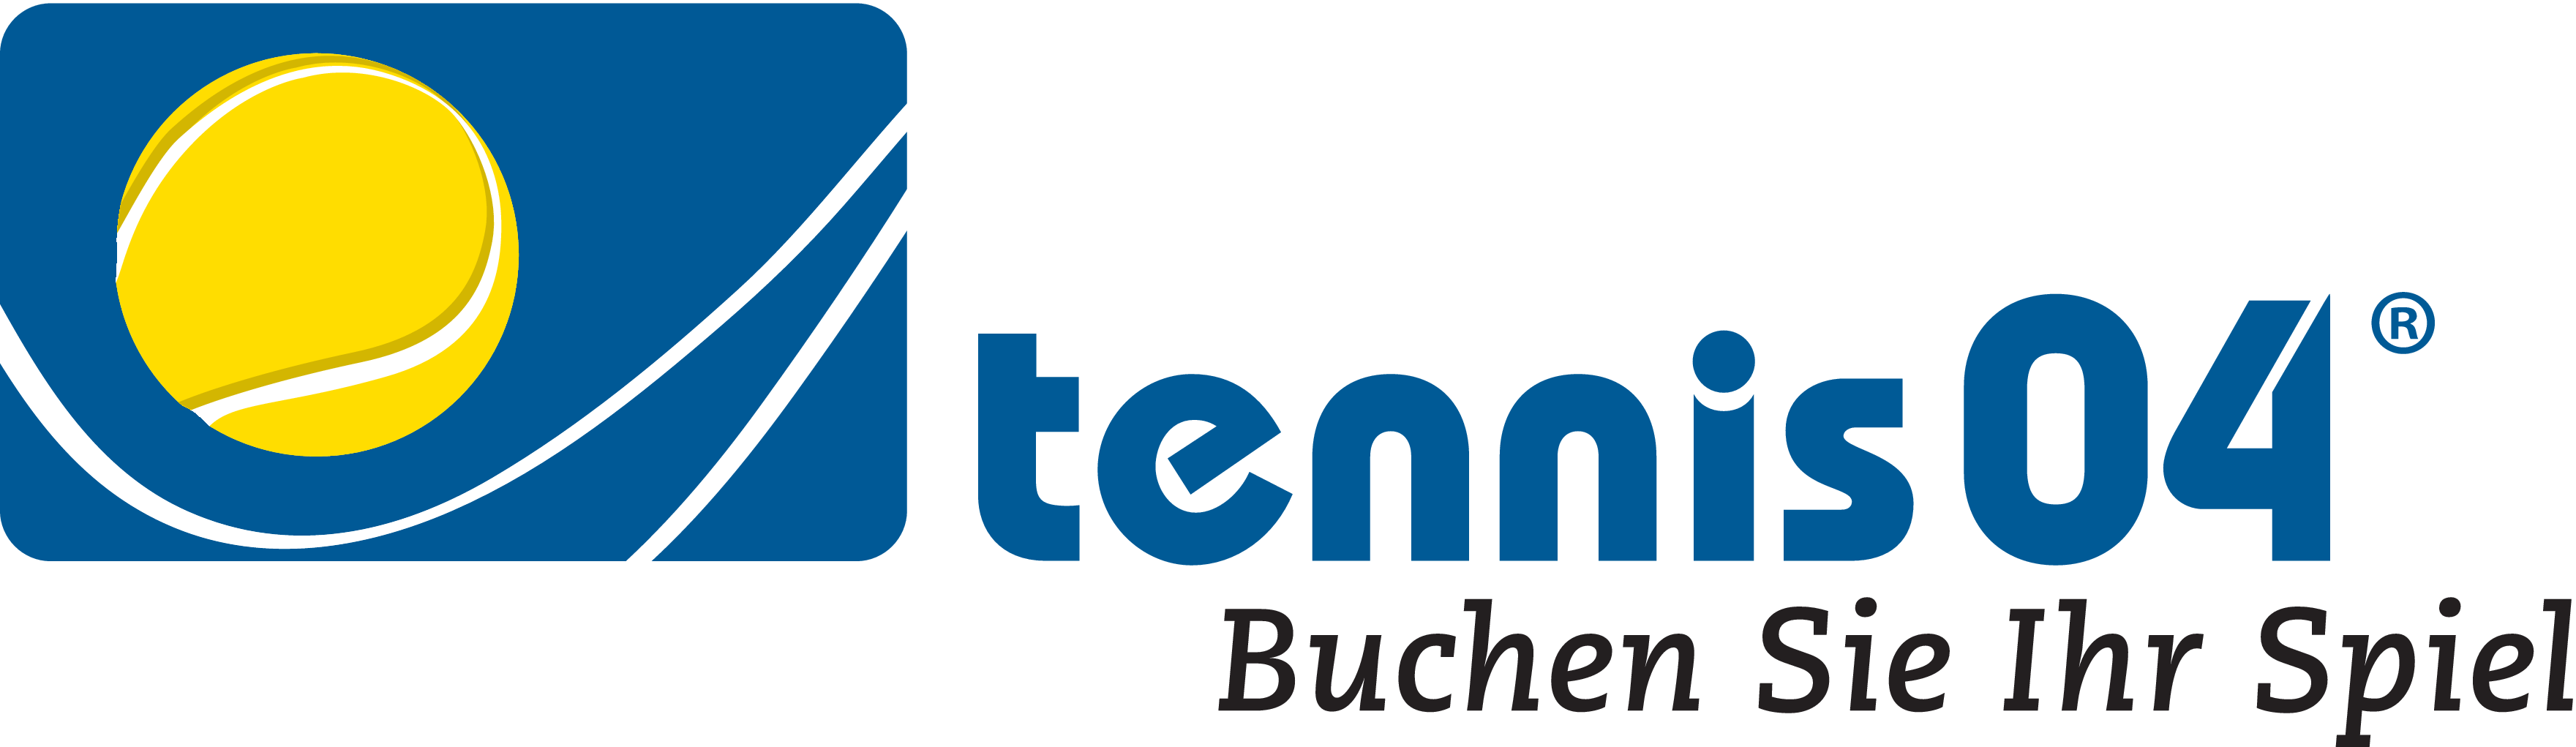 logo tennis04